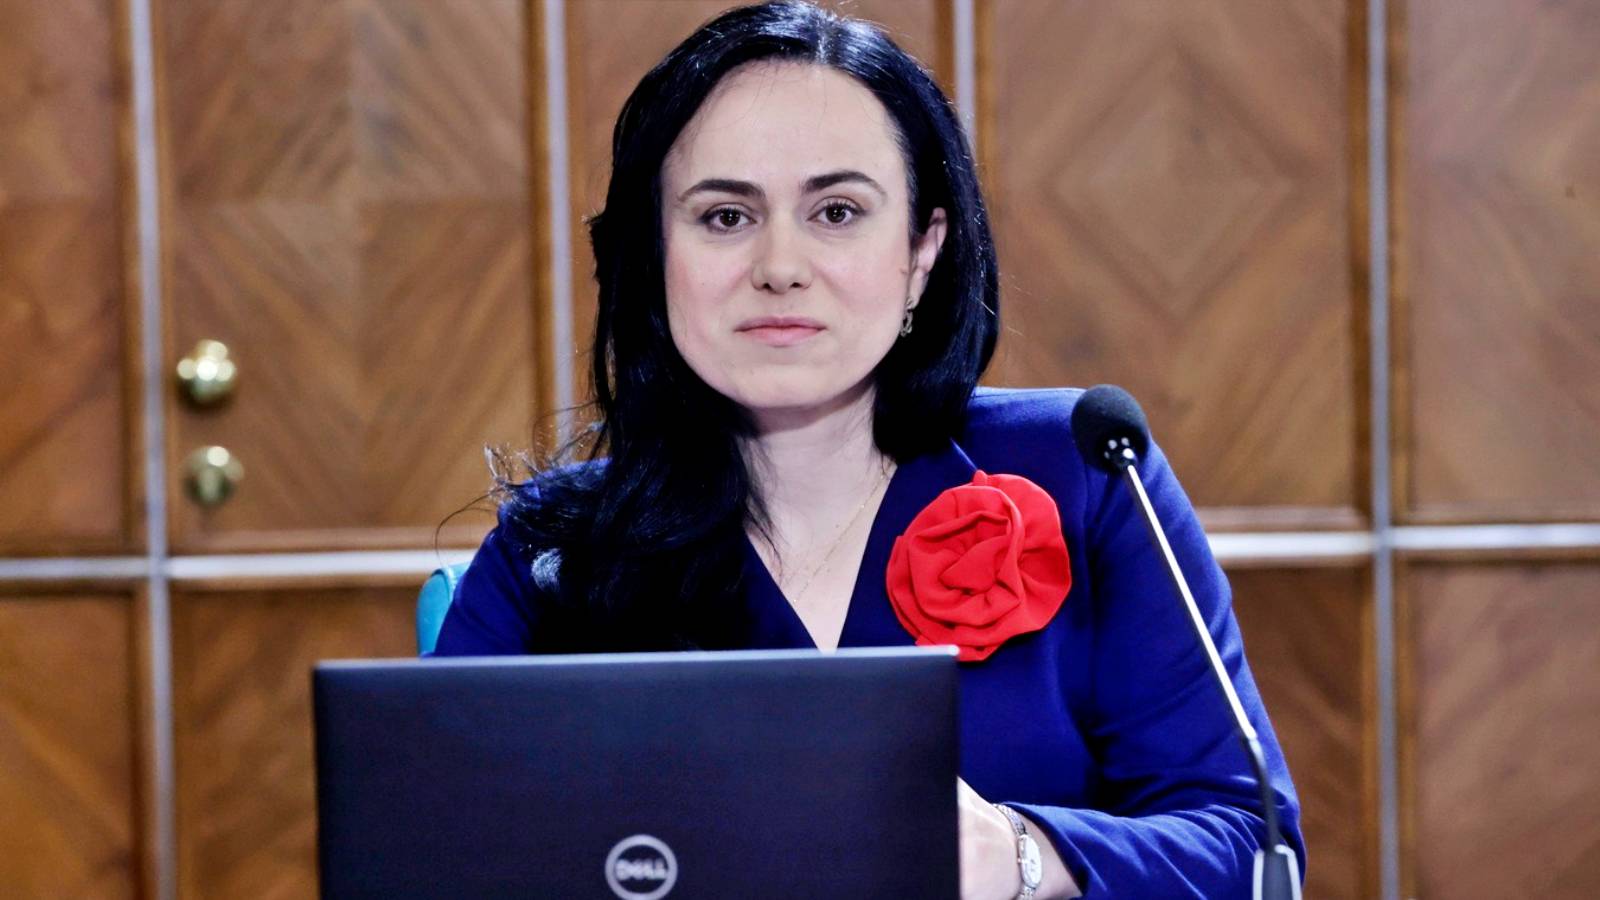 Simona - Bucura Oprescu Viktiga officiella åtgärder Rumäner Alla länder meddelade minister